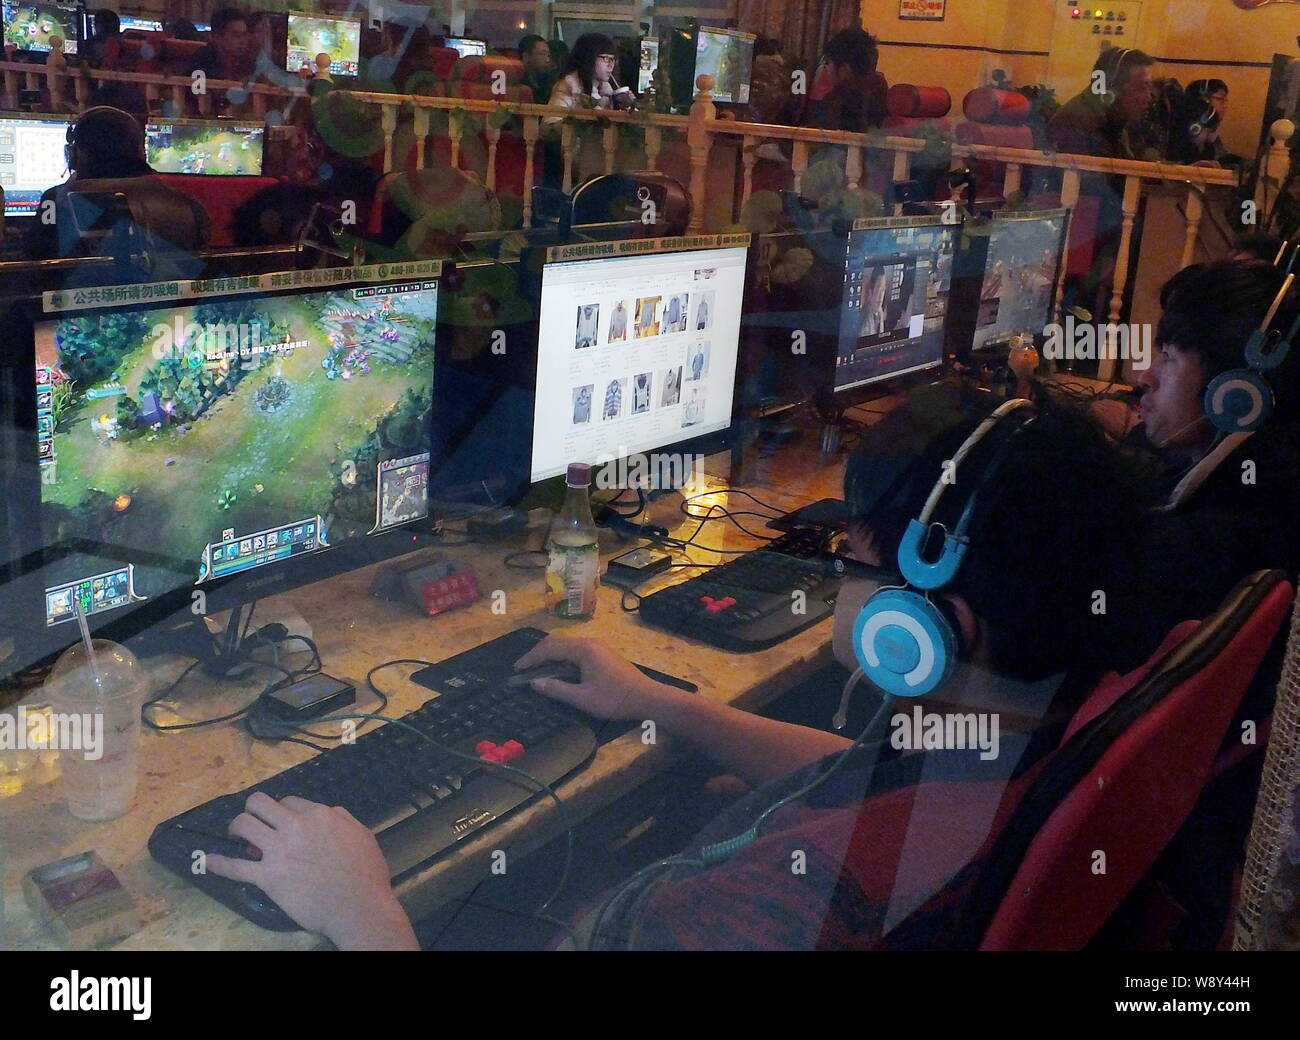 ------ Jungen netzbürger Online-Spiele spielen oder suchen Online Shops in einem Internet Cafe in Kunshan City, Central China Provinz Hubei, 15. Januar 2013. Stockfoto